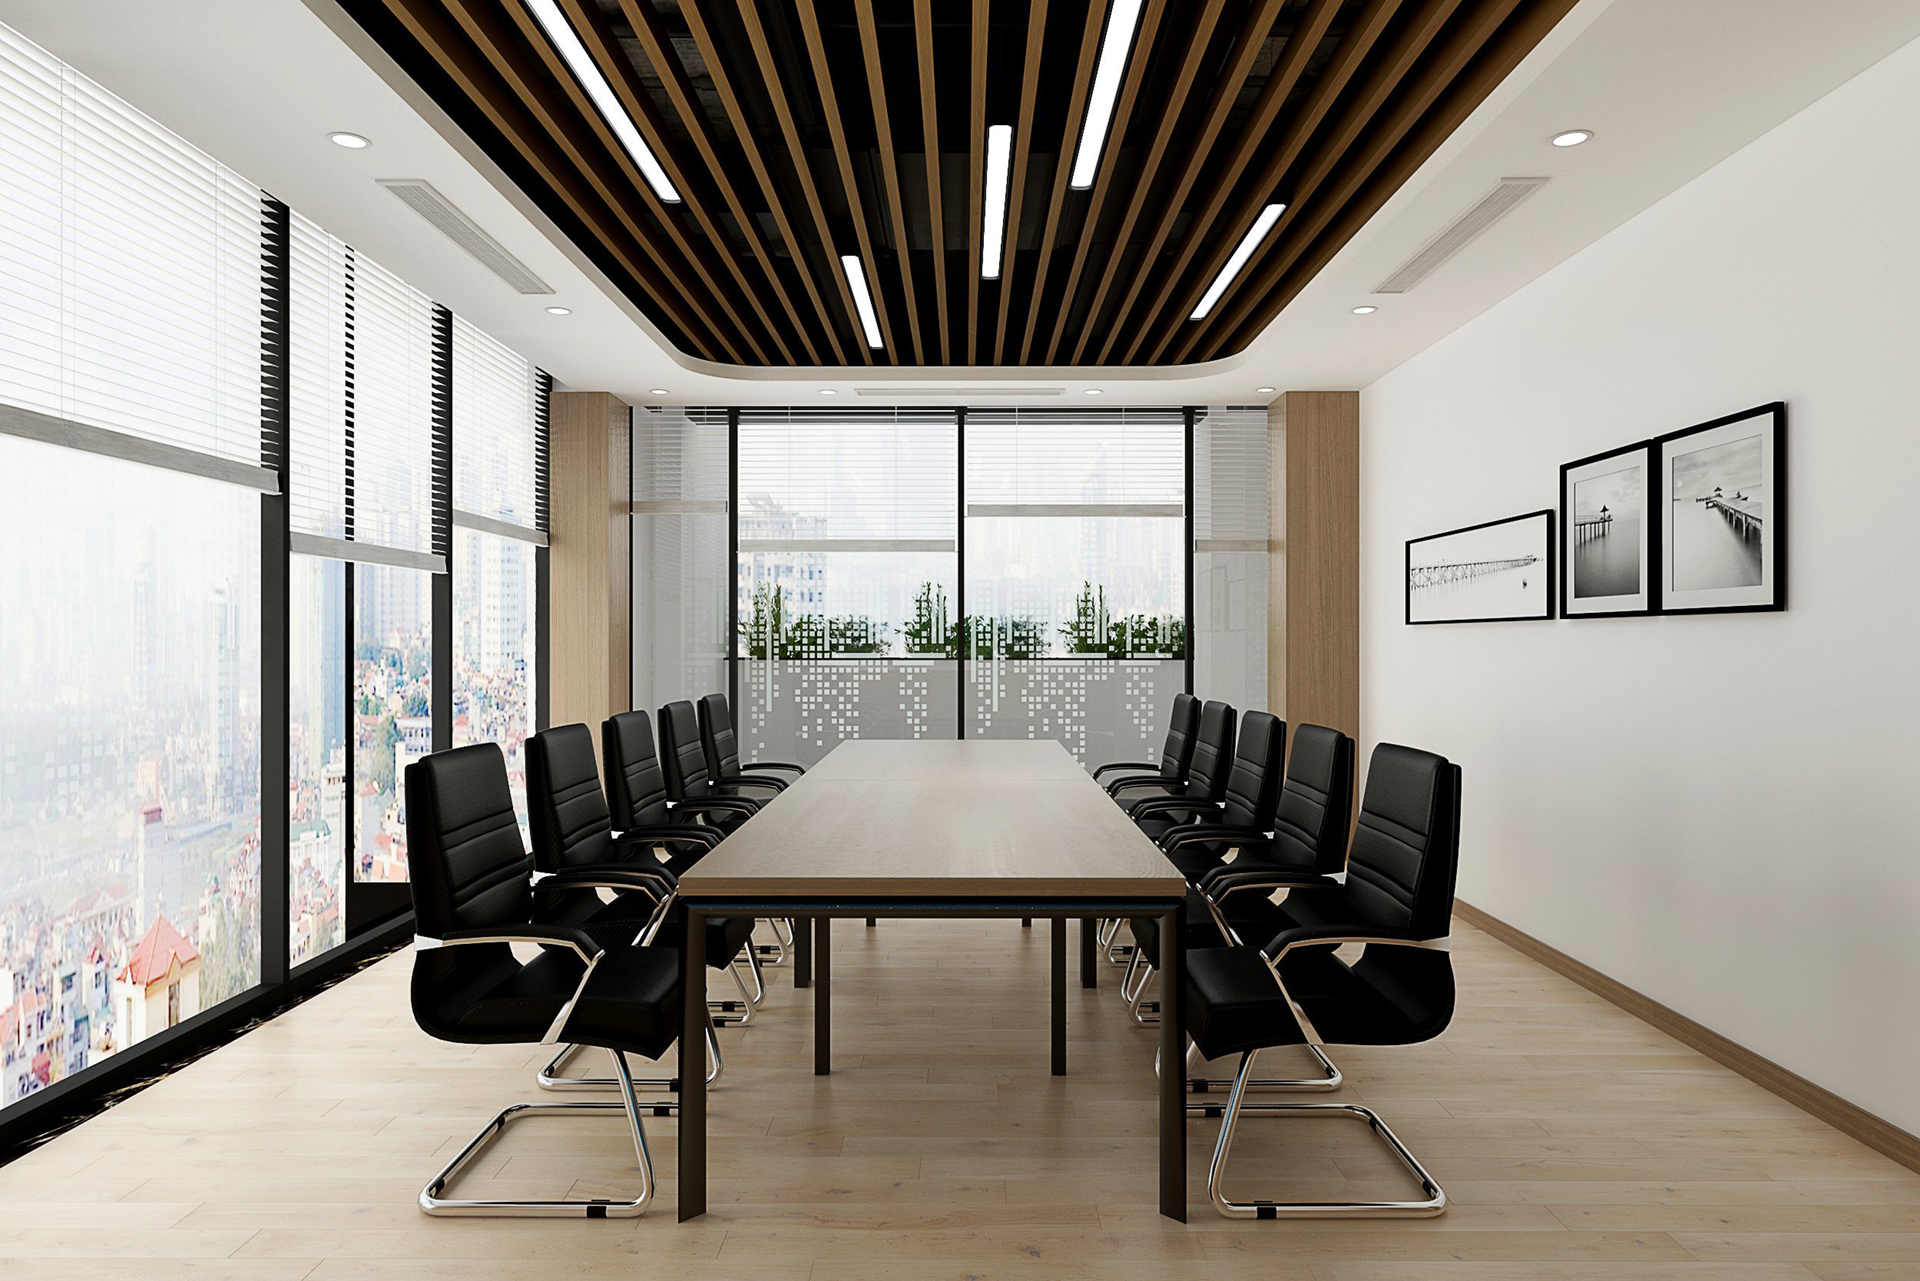 Phòng họp chính tone với chủ đạo trắng - nâu tối giản và hiện đại - Thiết kế bởi ICADVietnam